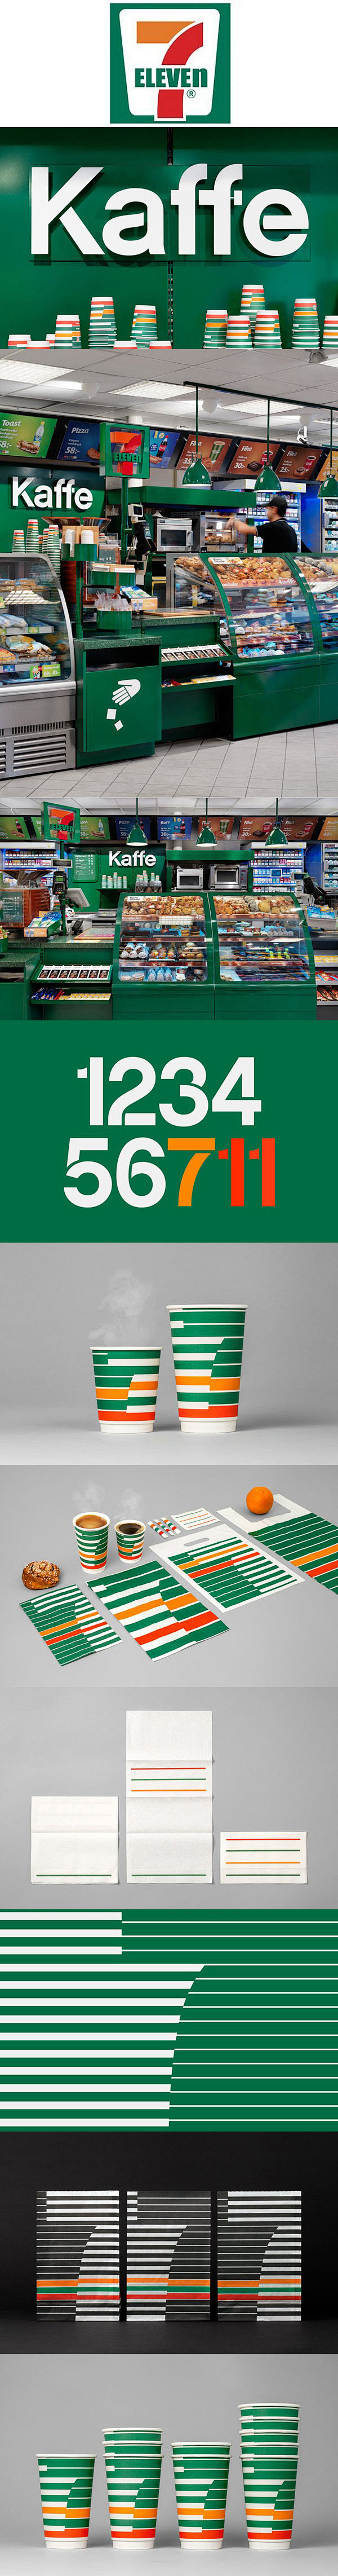 7-11便利店为瑞典市场更新他们咖啡品牌...